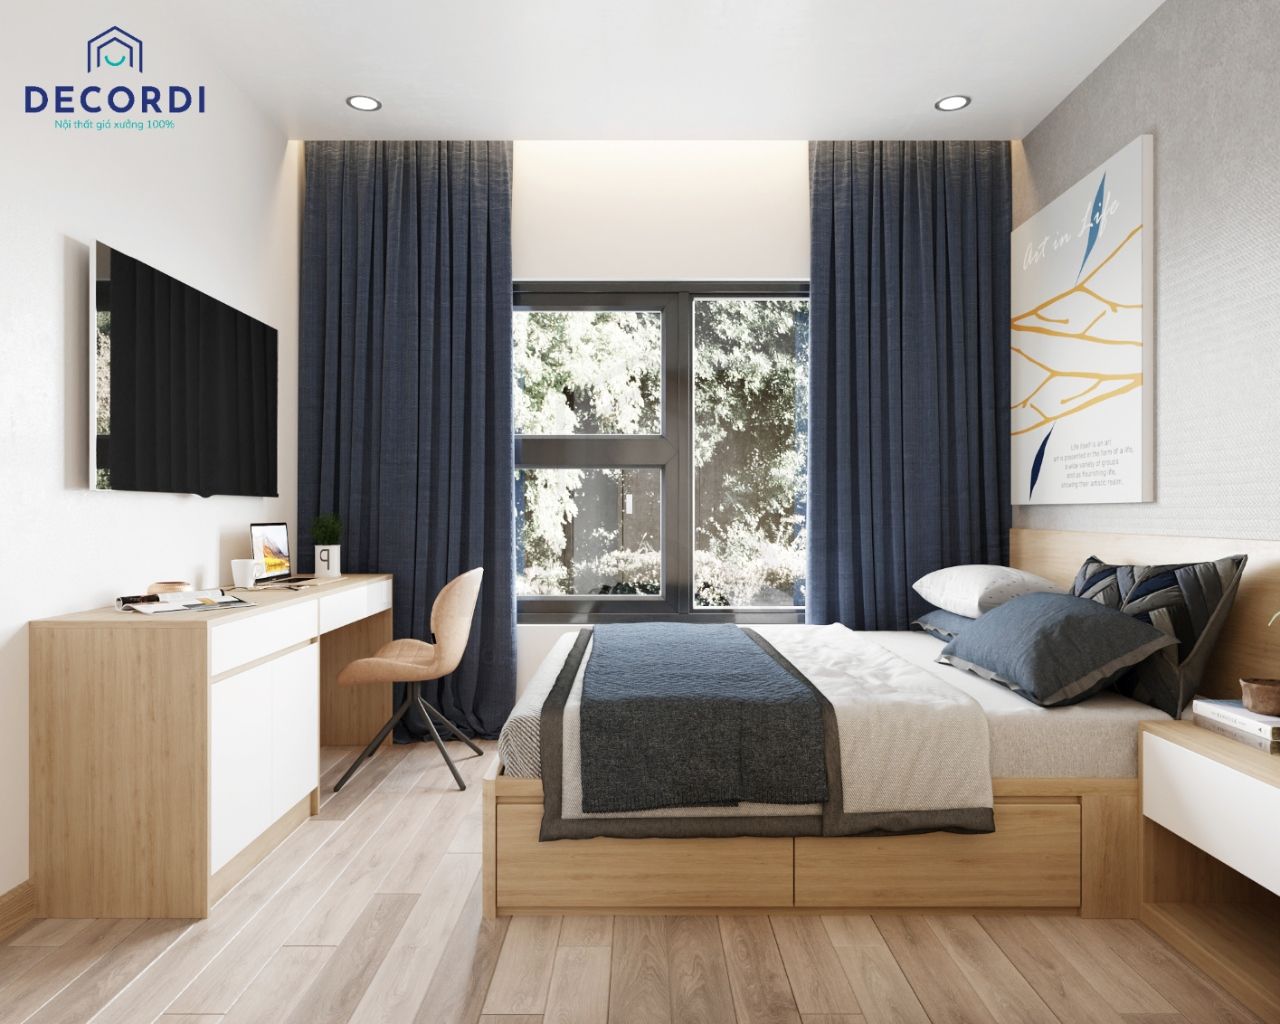 Phòng ngủ hiện đại với rèm vải màu xanh kích thước lớn tô điểm cho căn phòng